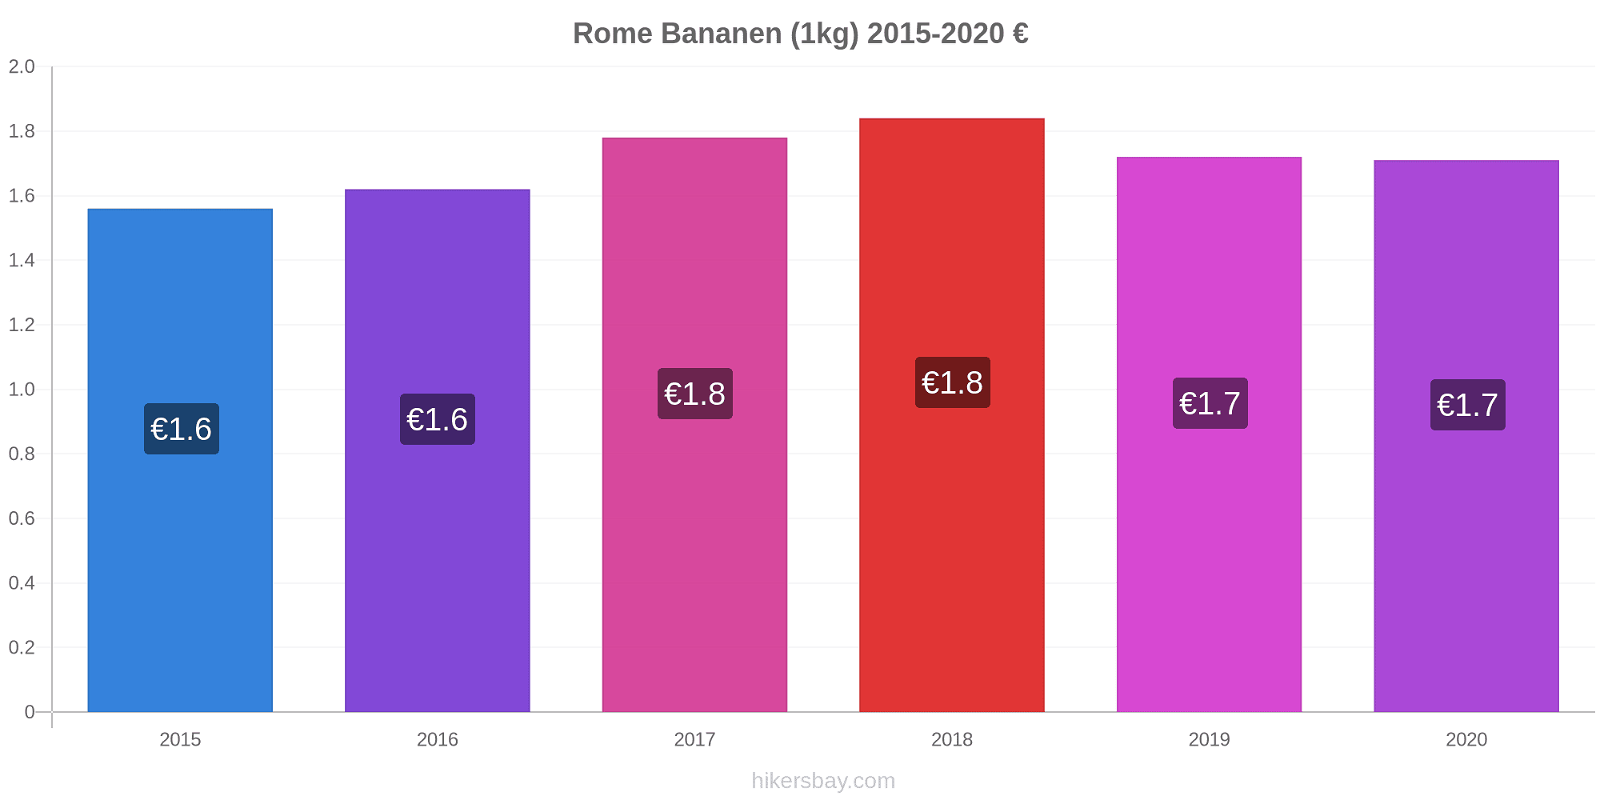 Rome prijswijzigingen Banaan (1kg) hikersbay.com